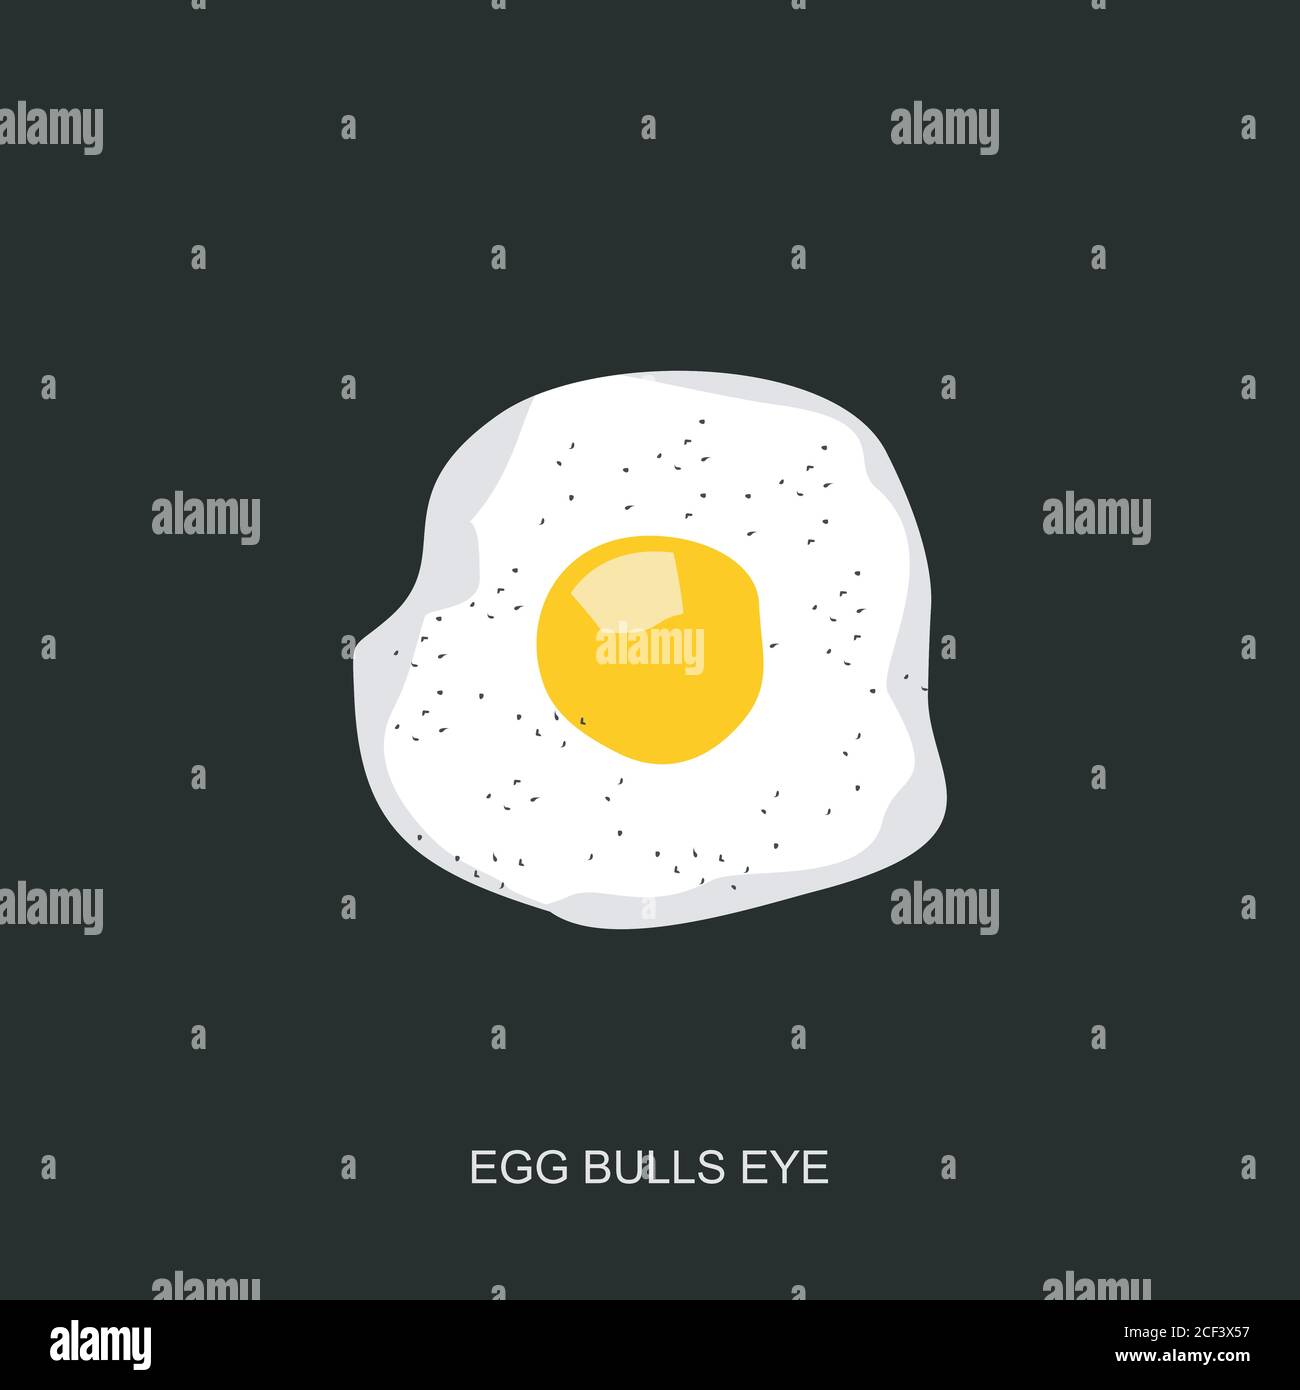 Fried egg or egg bulls eye vector design Stock Vector